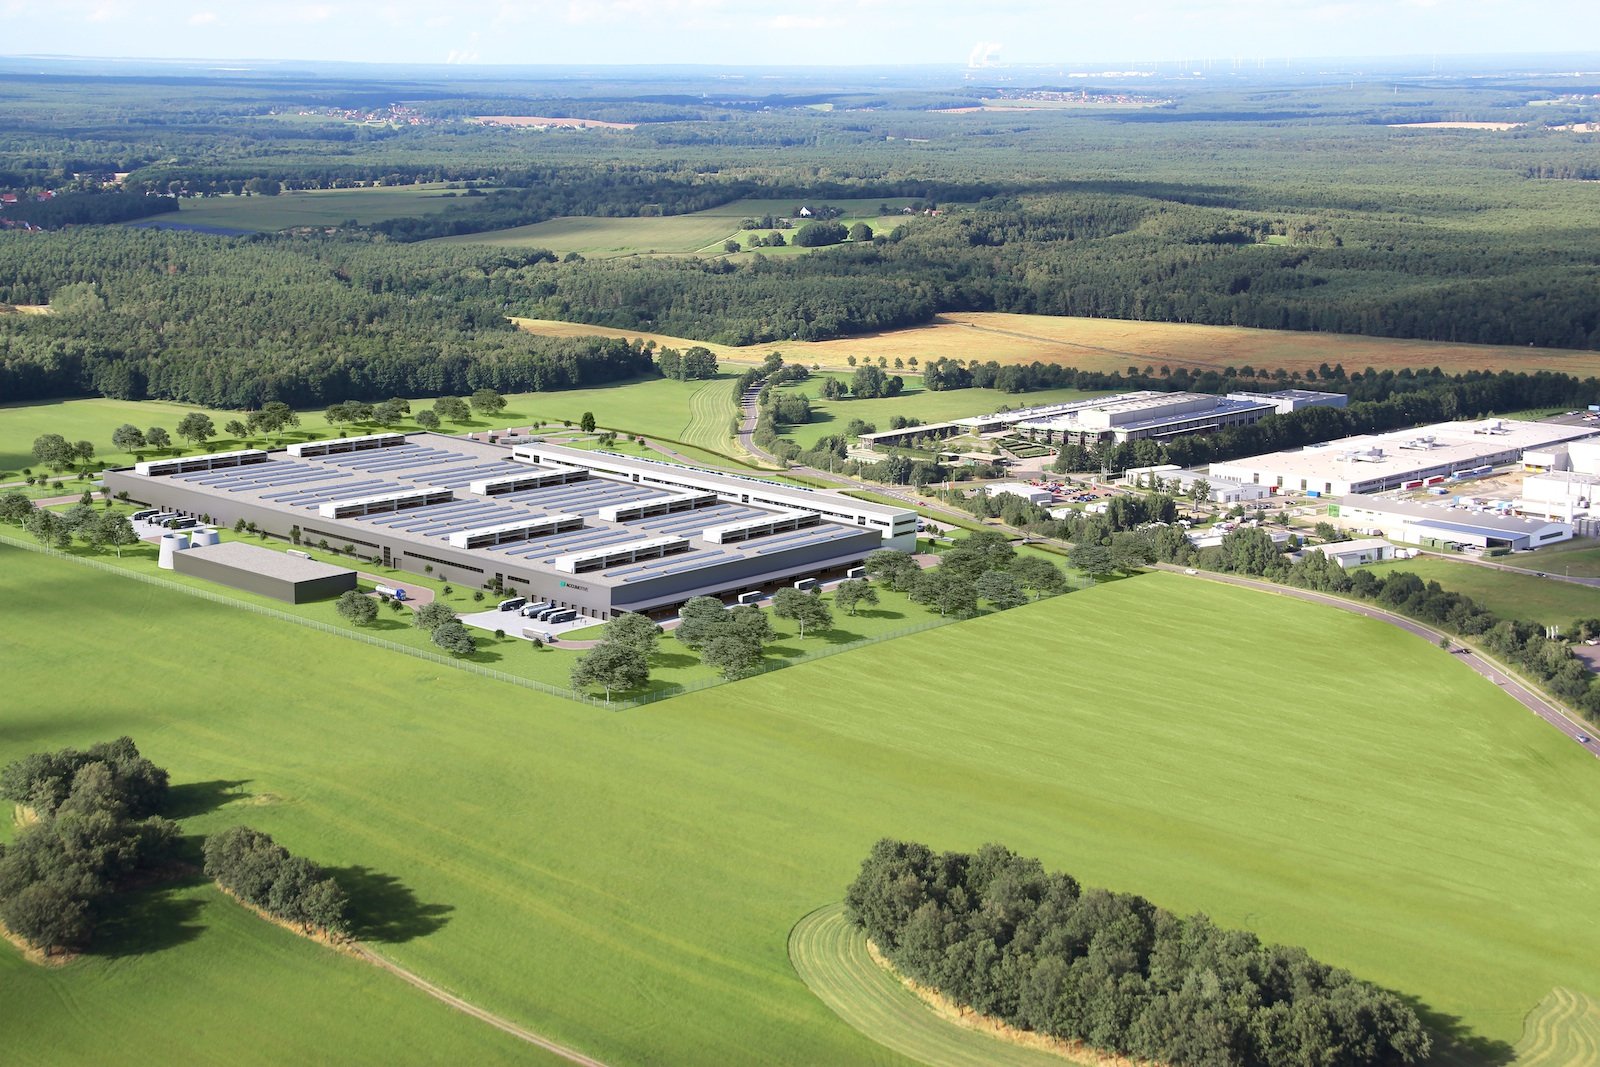 Daimler beginnt mit dem Bau einer zweiten Batteriefabrik bei der Accumotive am Standort Kamenz. Die Produktions- und Logistikfläche wird mit der neuen Fabrik auf rund 80.000 m2 vervierfacht.